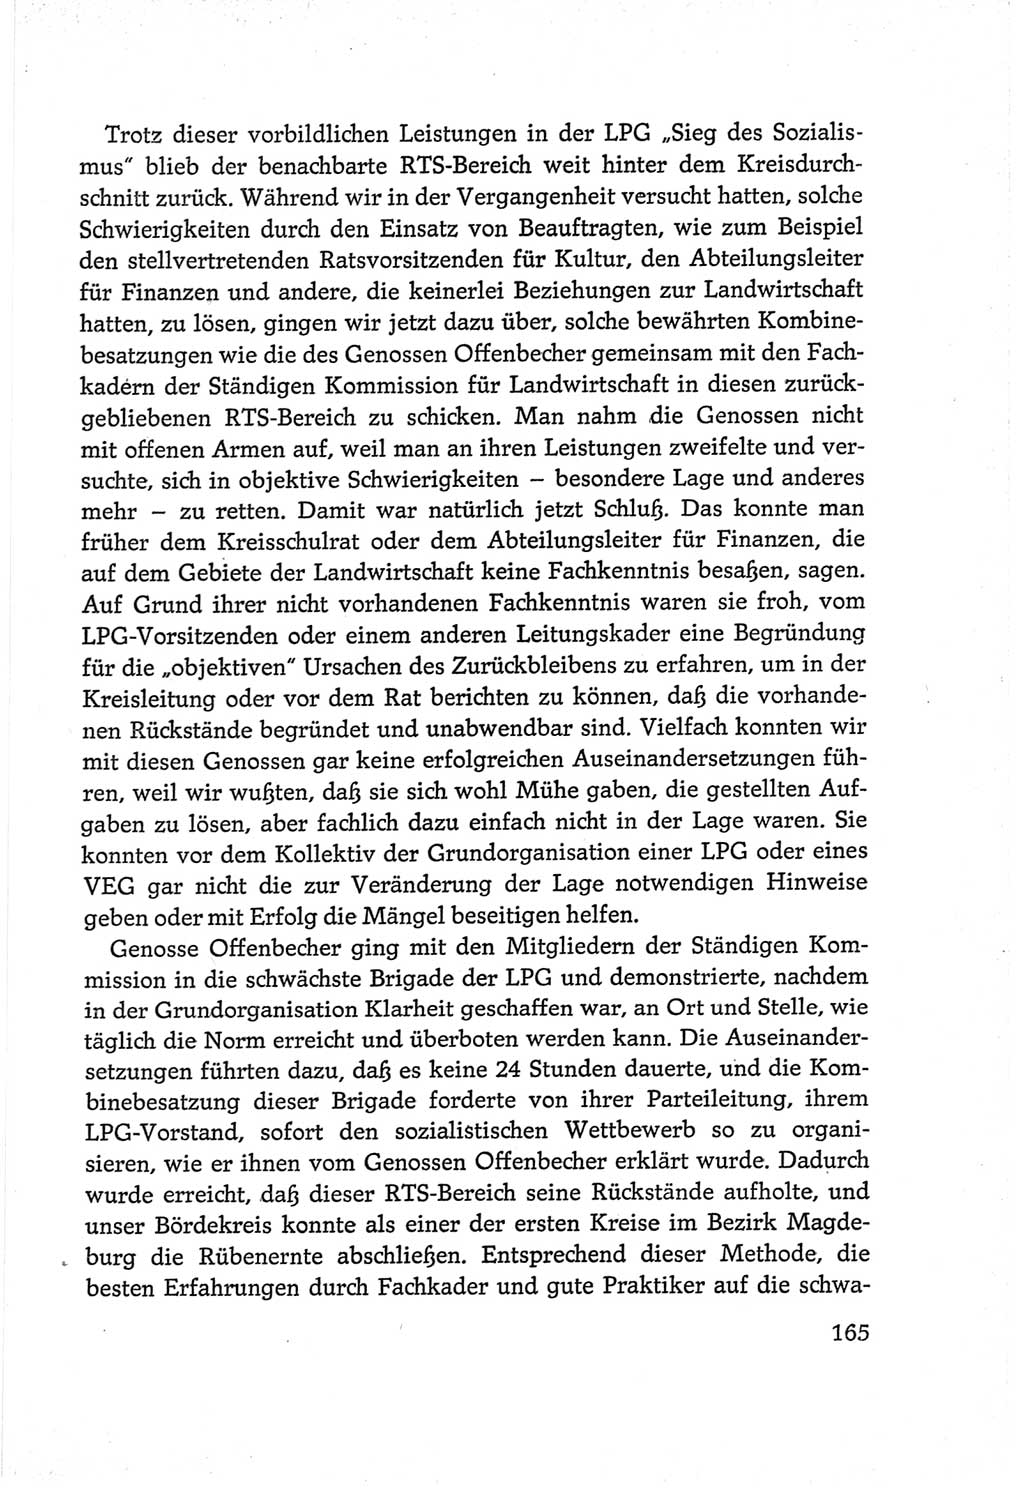 Protokoll der Verhandlungen des Ⅵ. Parteitages der Sozialistischen Einheitspartei Deutschlands (SED) [Deutsche Demokratische Republik (DDR)] 1963, Band Ⅲ, Seite 165 (Prot. Verh. Ⅵ. PT SED DDR 1963, Bd. Ⅲ, S. 165)